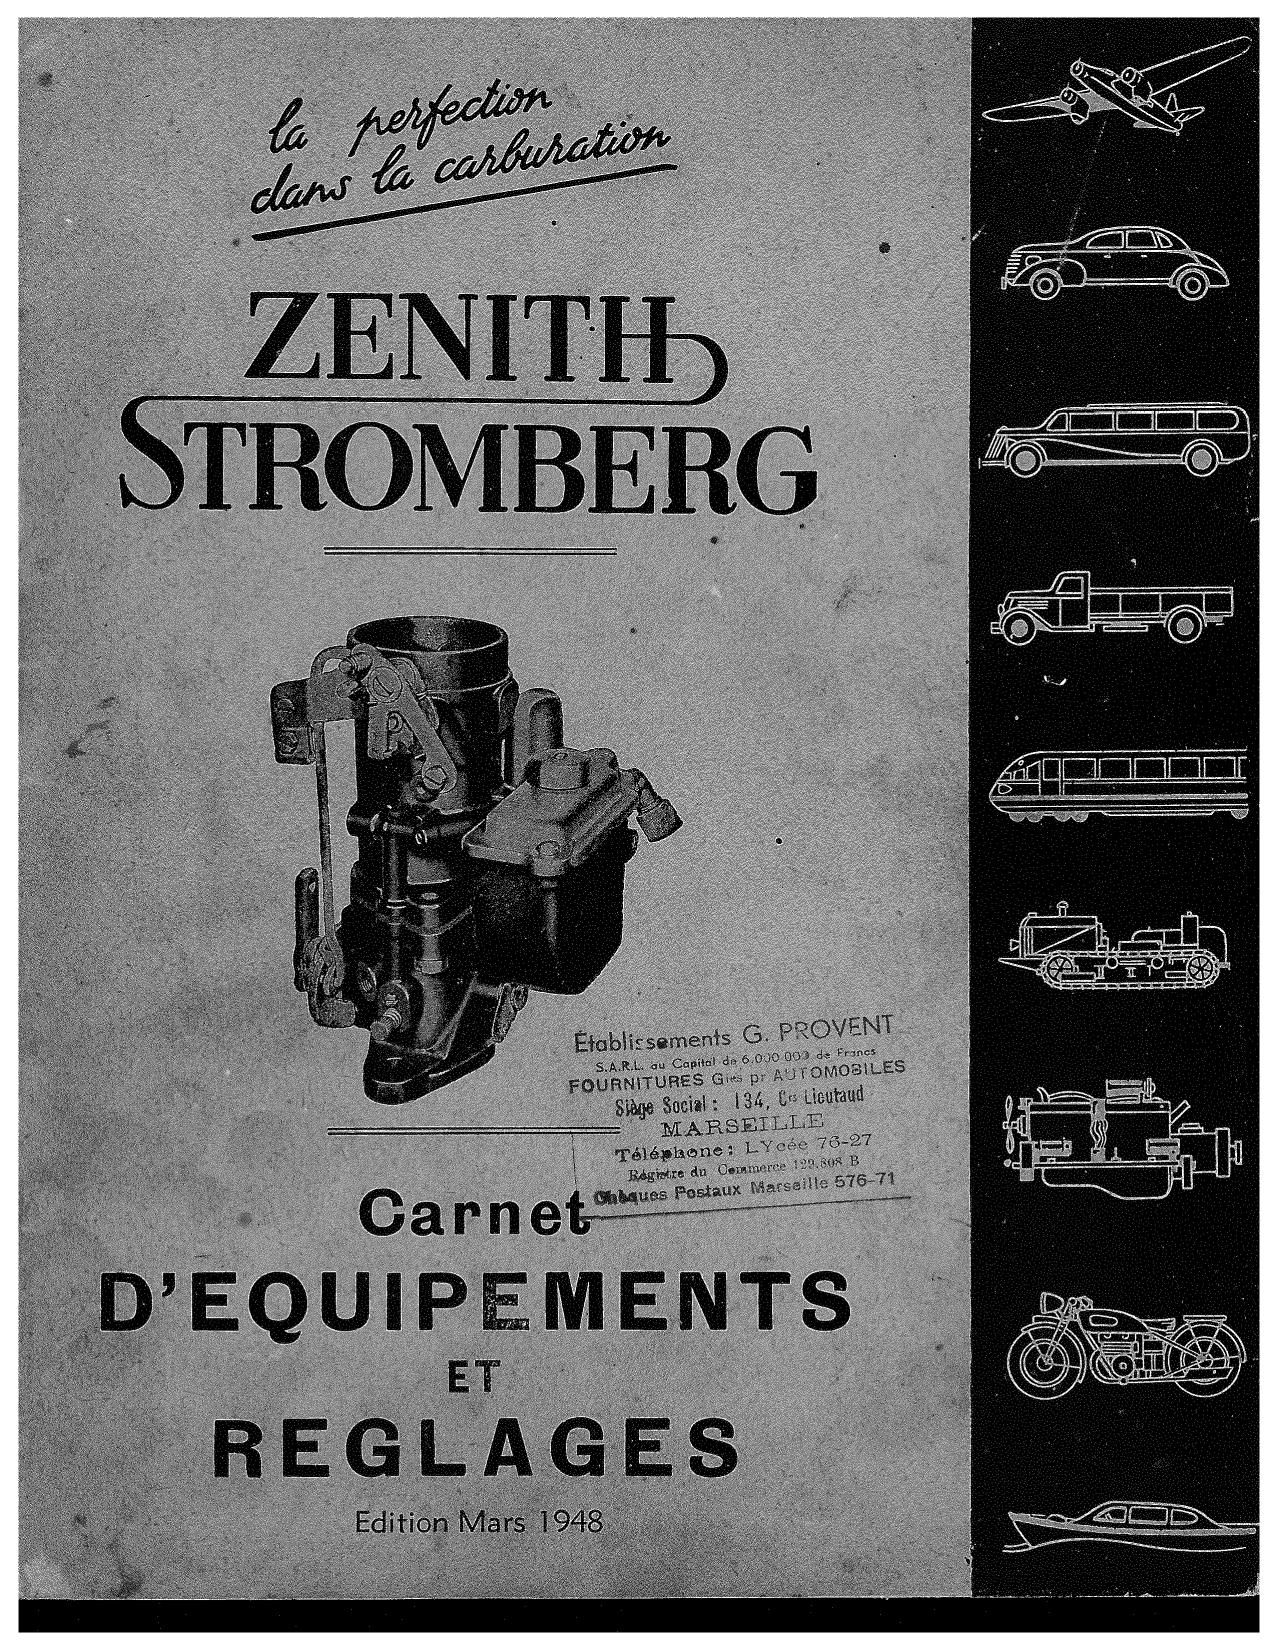 Zenith Stromberg  catalogue 1948 A000320